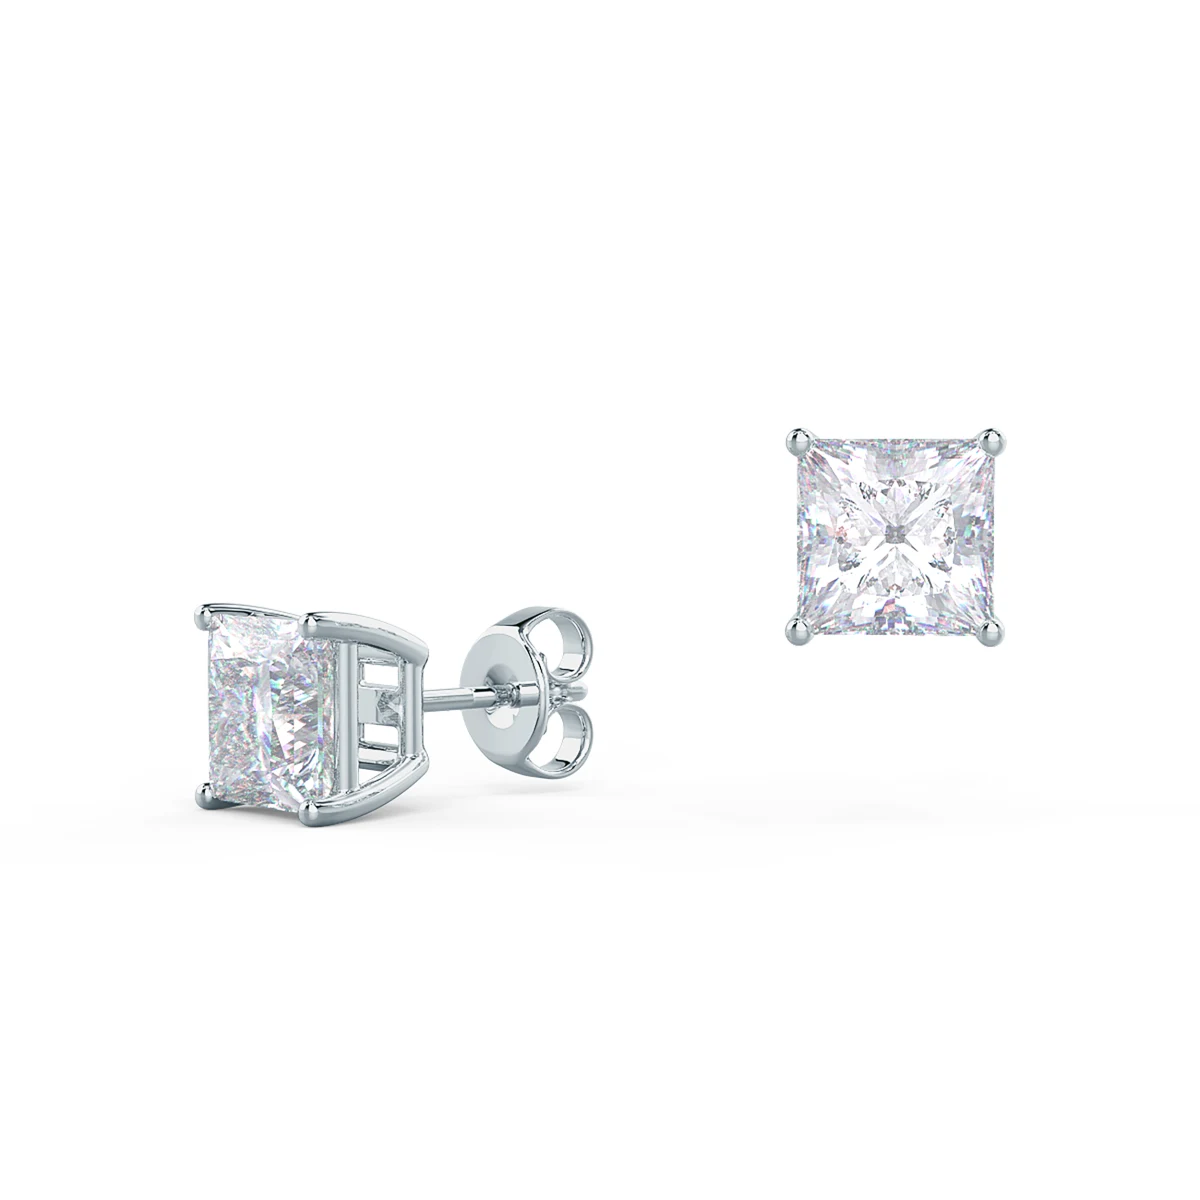 14k Square Cut Diamond Earring - Single Stud